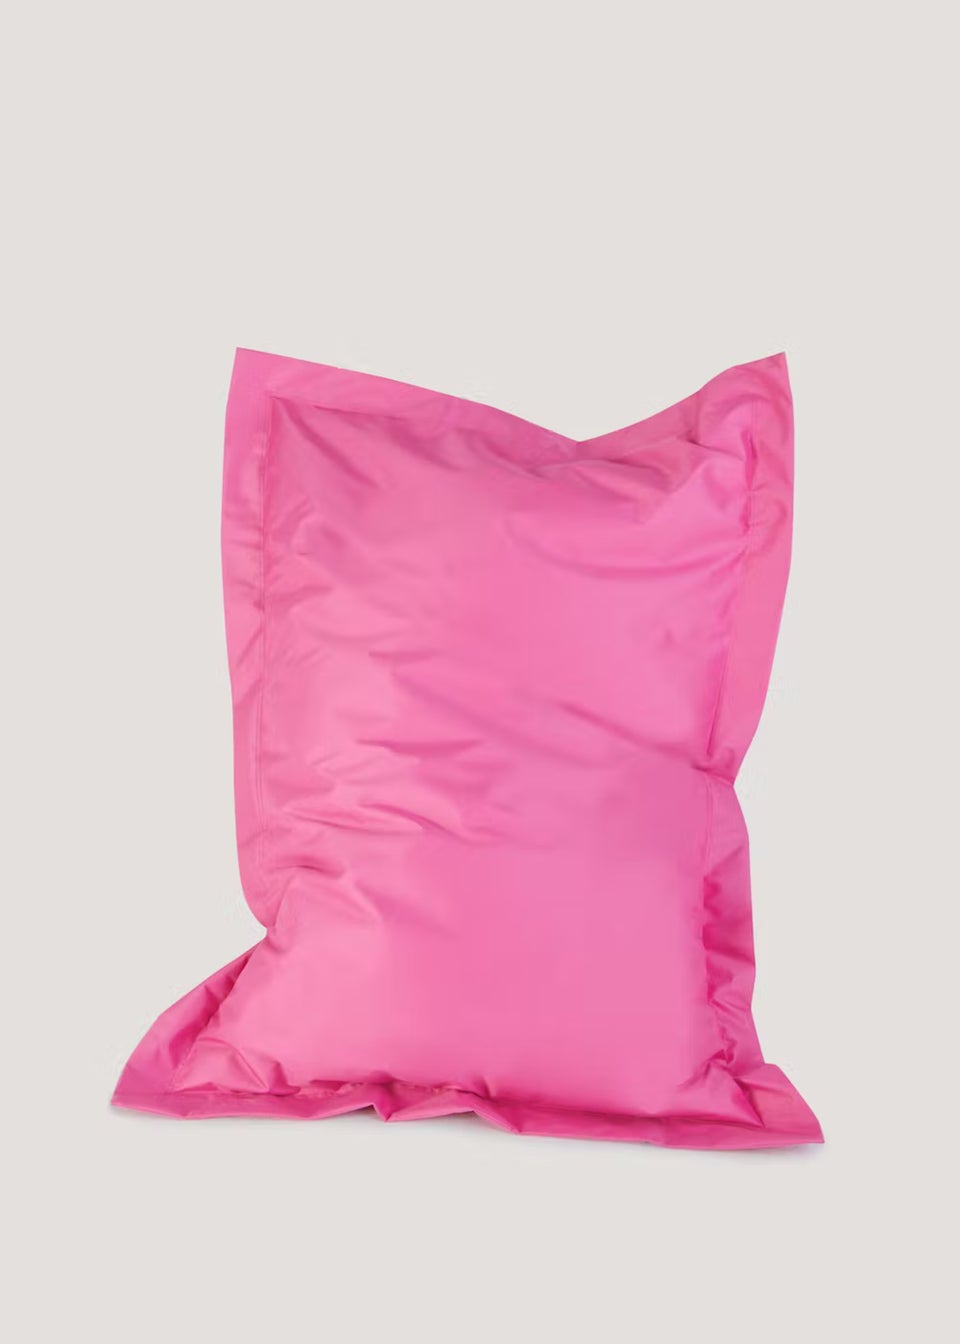 Kaikoo Indoor- Outdoor XL Floor Cushions Fuchsia Pink